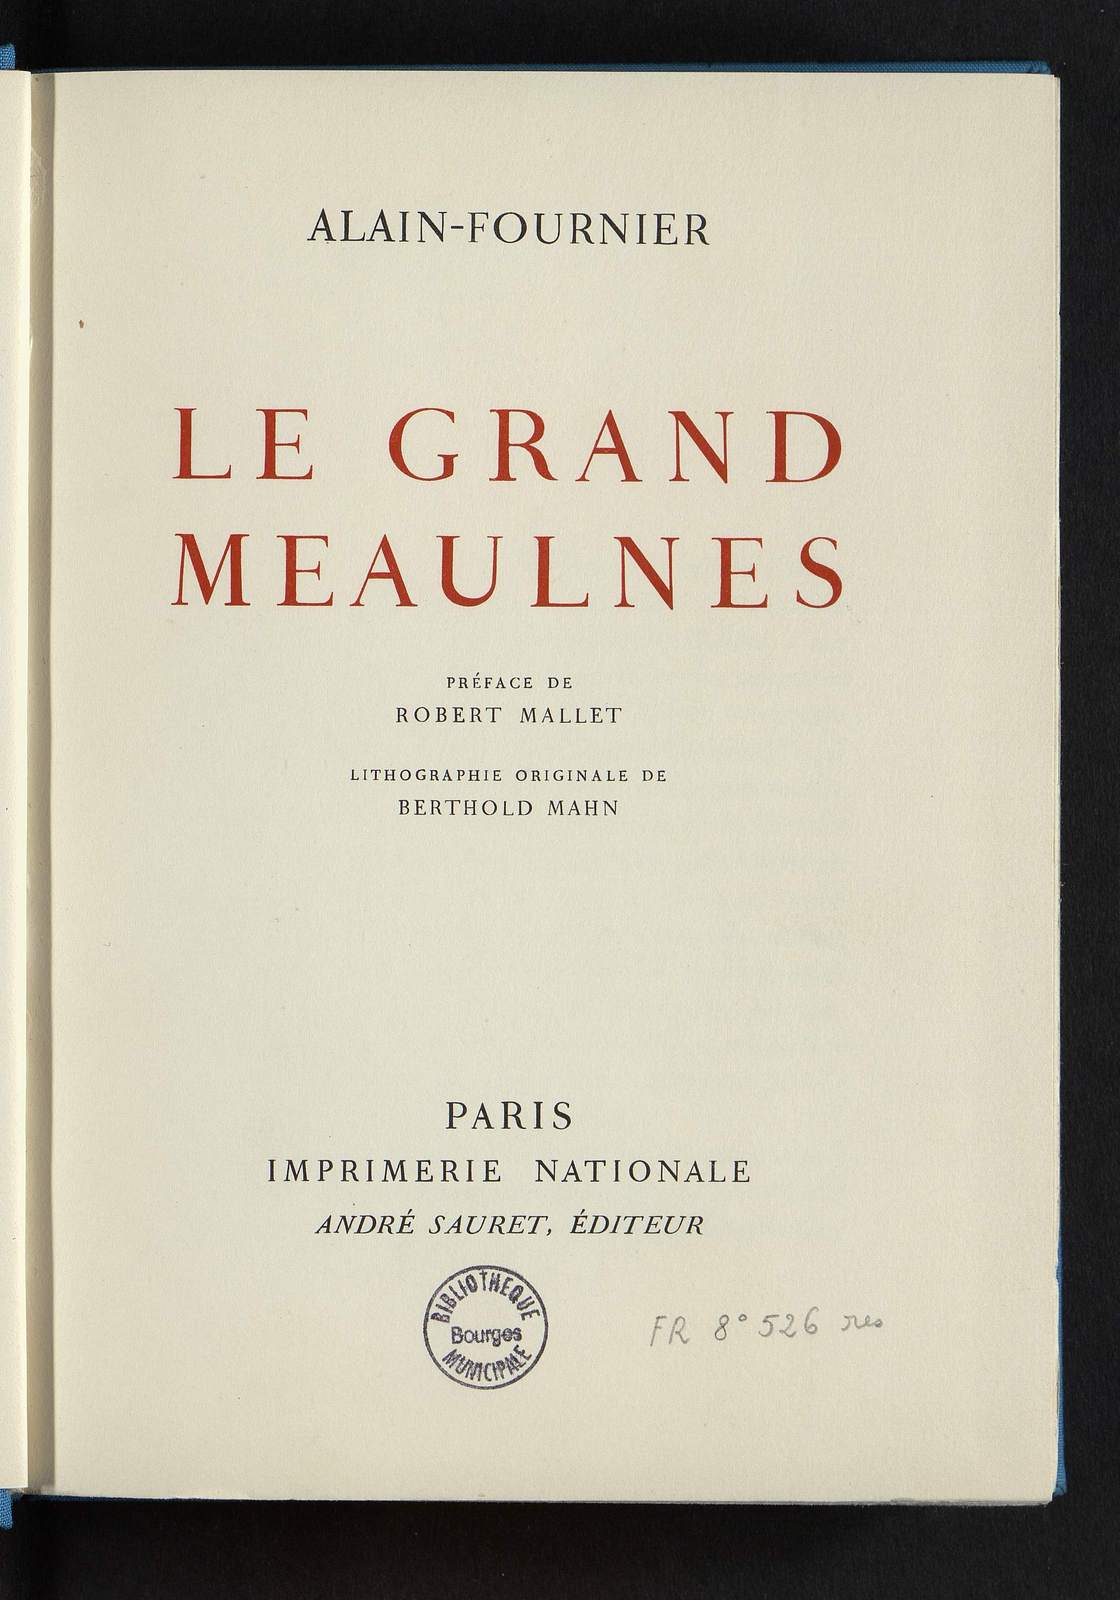 Le Grand Meaulnes, illustré par Berthold Mahn, Imprimerie nationale, 1958